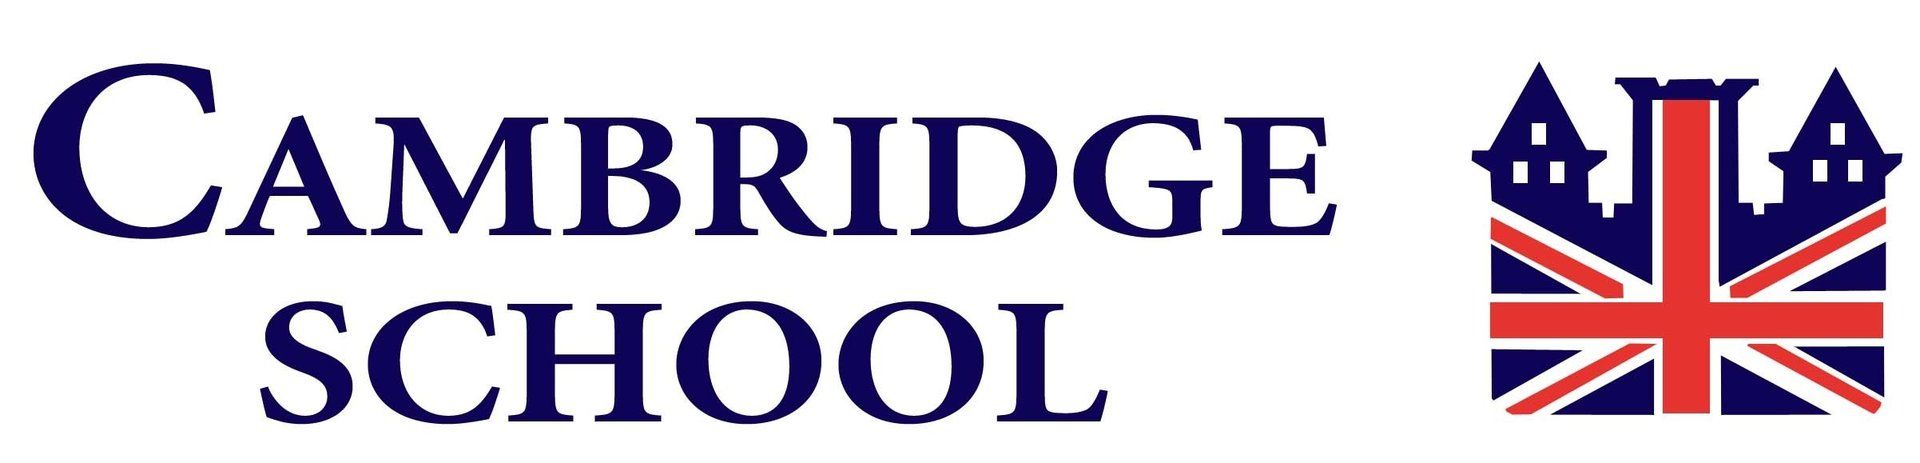 cambridge school